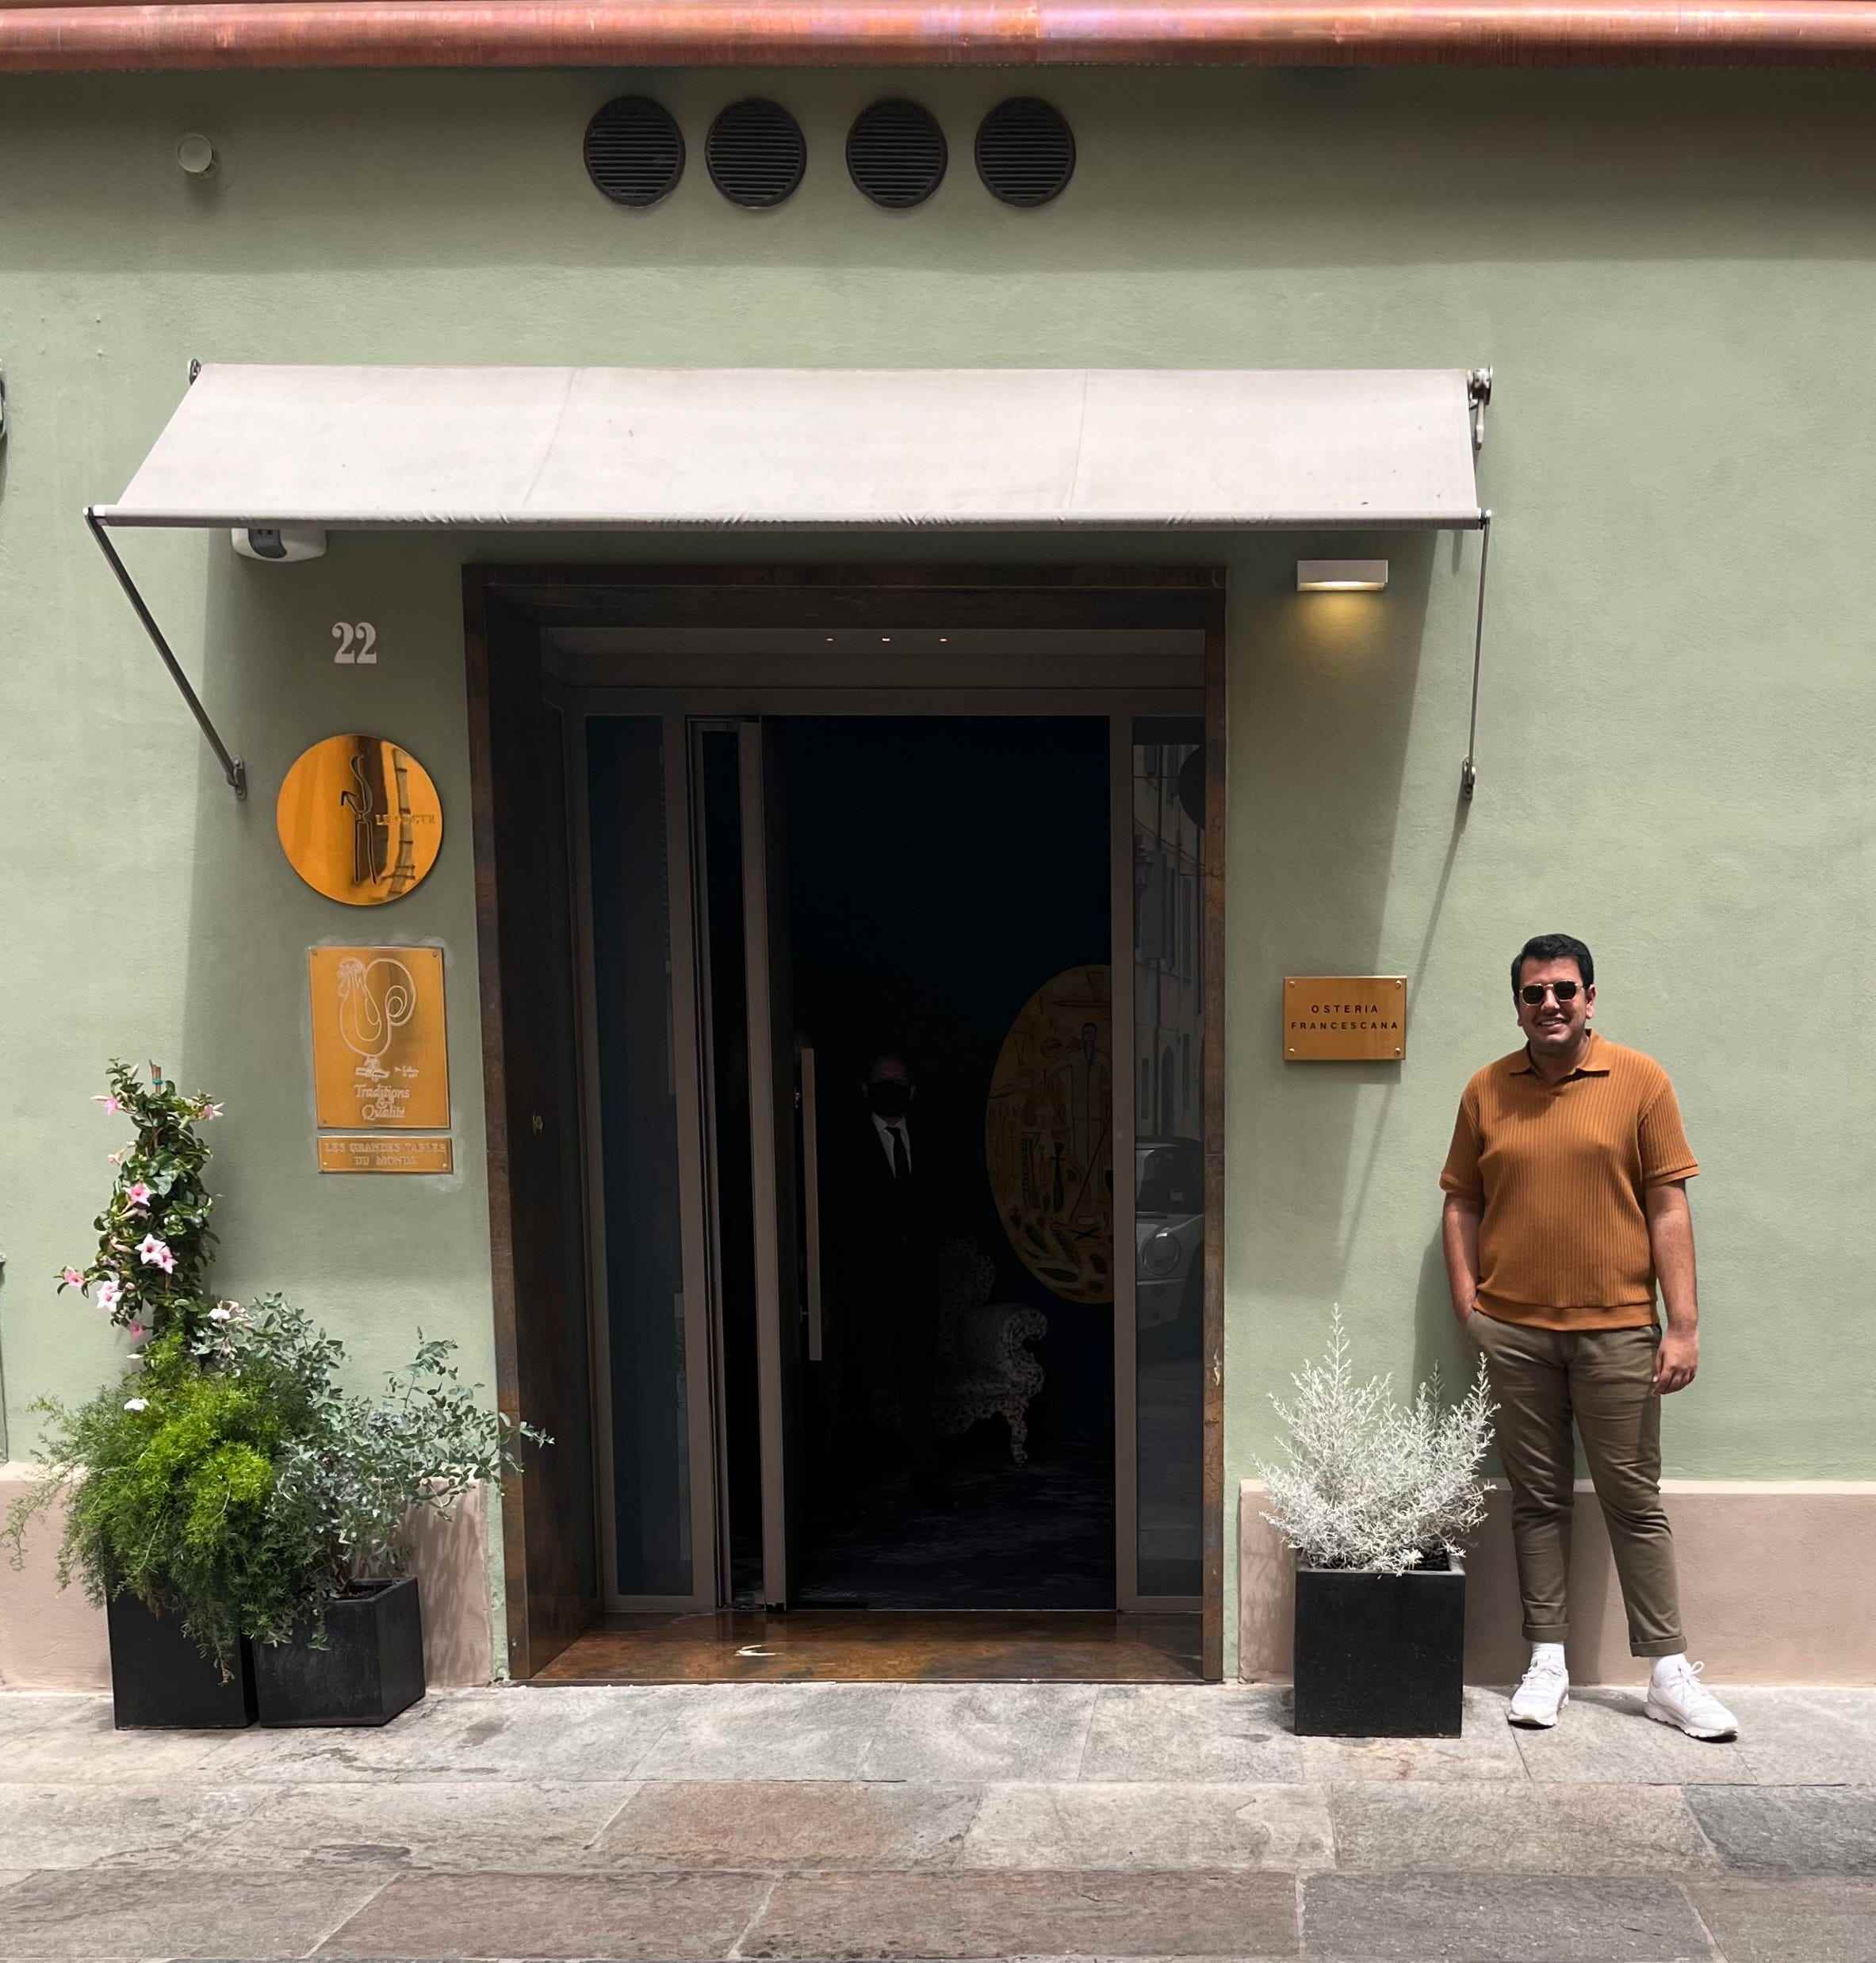 Der Schriftsteller neben dem Eingang zur Osteria Francescana